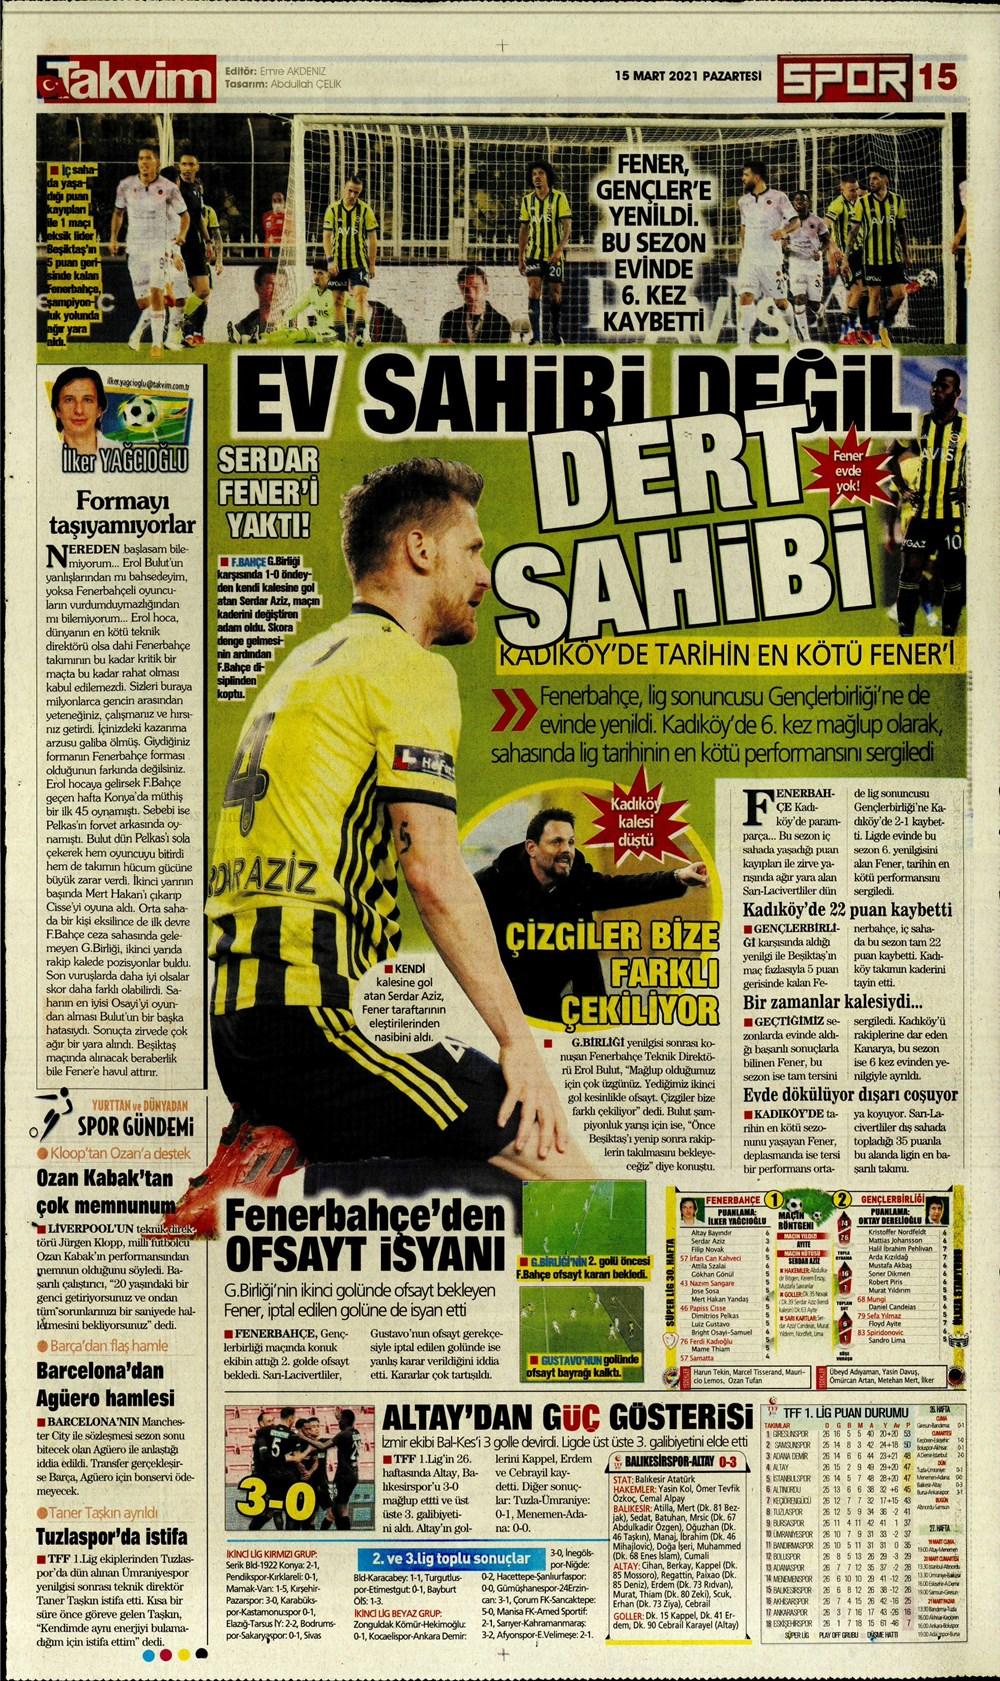 Fenerbahçe lige havlu attı (Spor Manşetleri 15 mart)